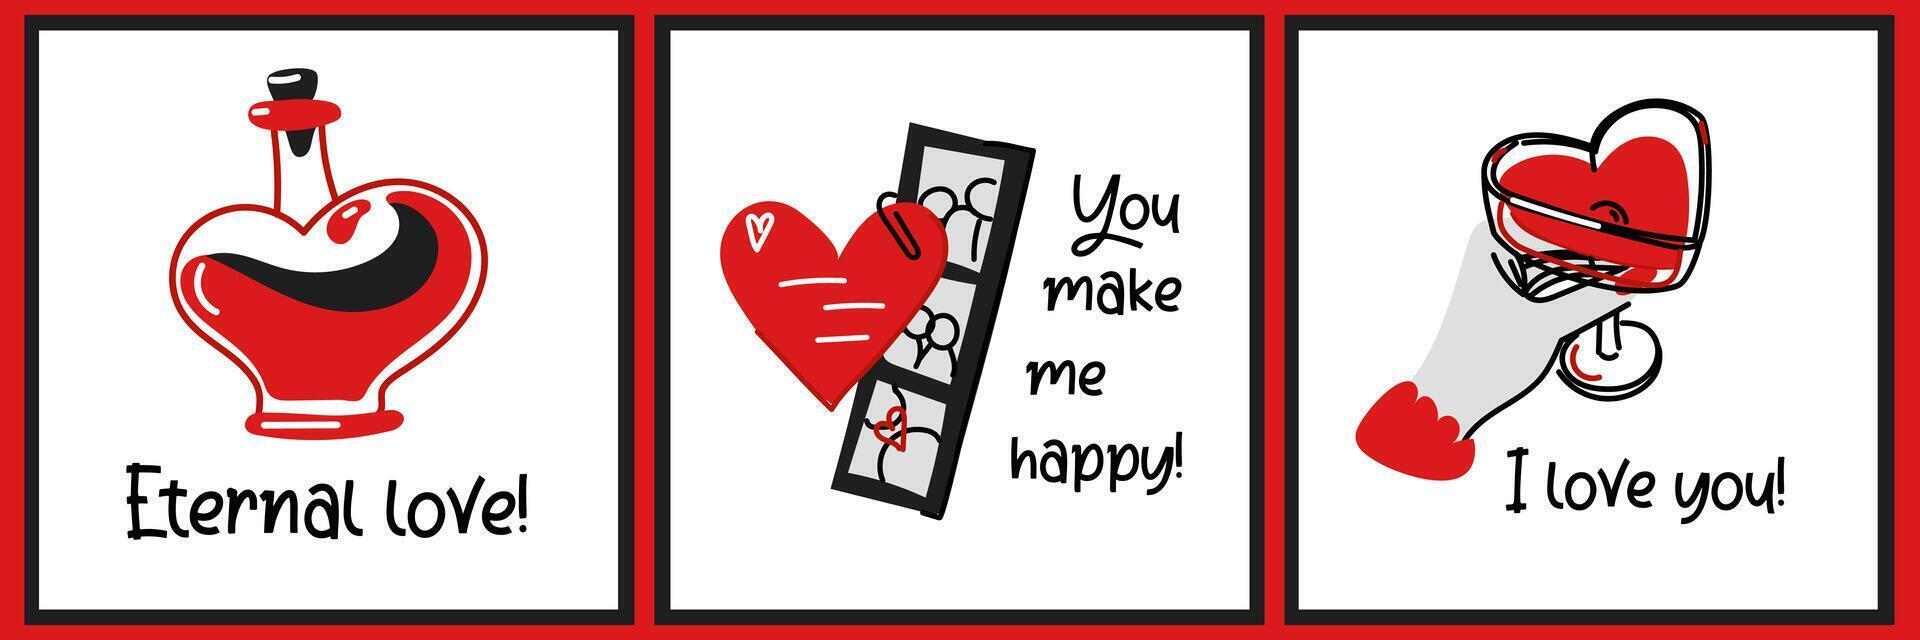 reeks van Valentijnsdag dag ansichtkaarten van doodle-stijl illustraties. een pot van toverdrank in de vorm van een hart, een Valentijn met een strip van foto's, een vrouw hand- met een glas. allemaal illustraties met tekst vector